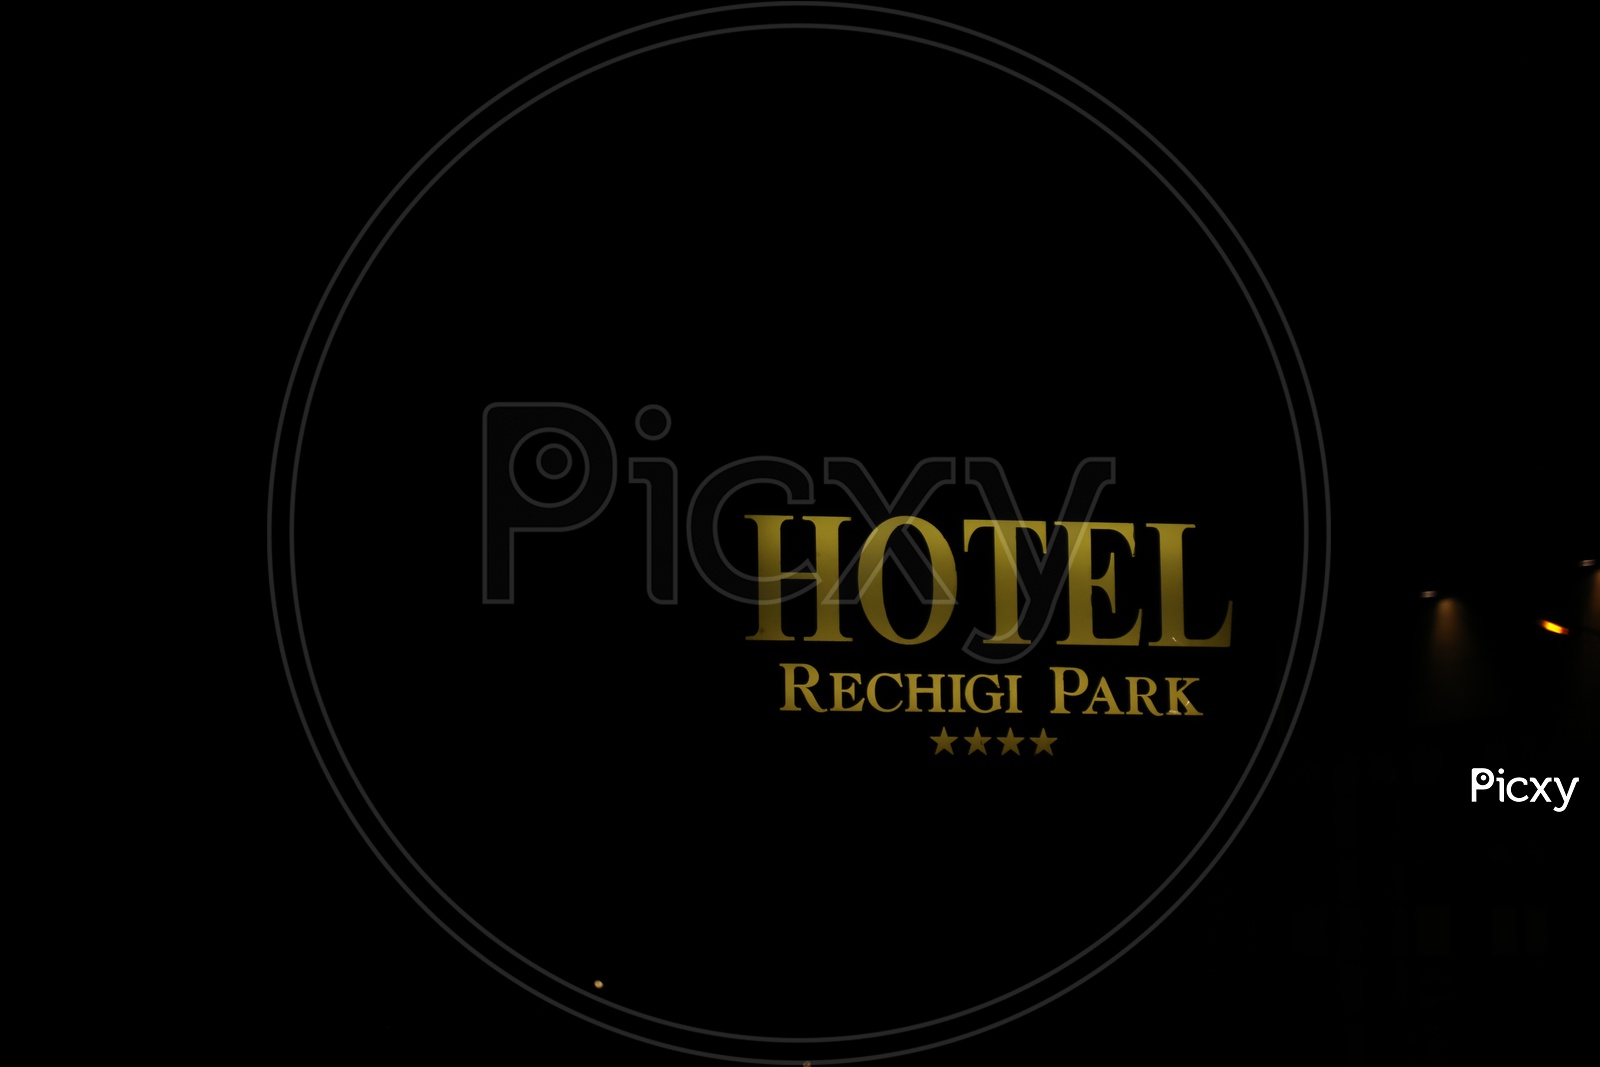 Hotel RECHIGI PARK